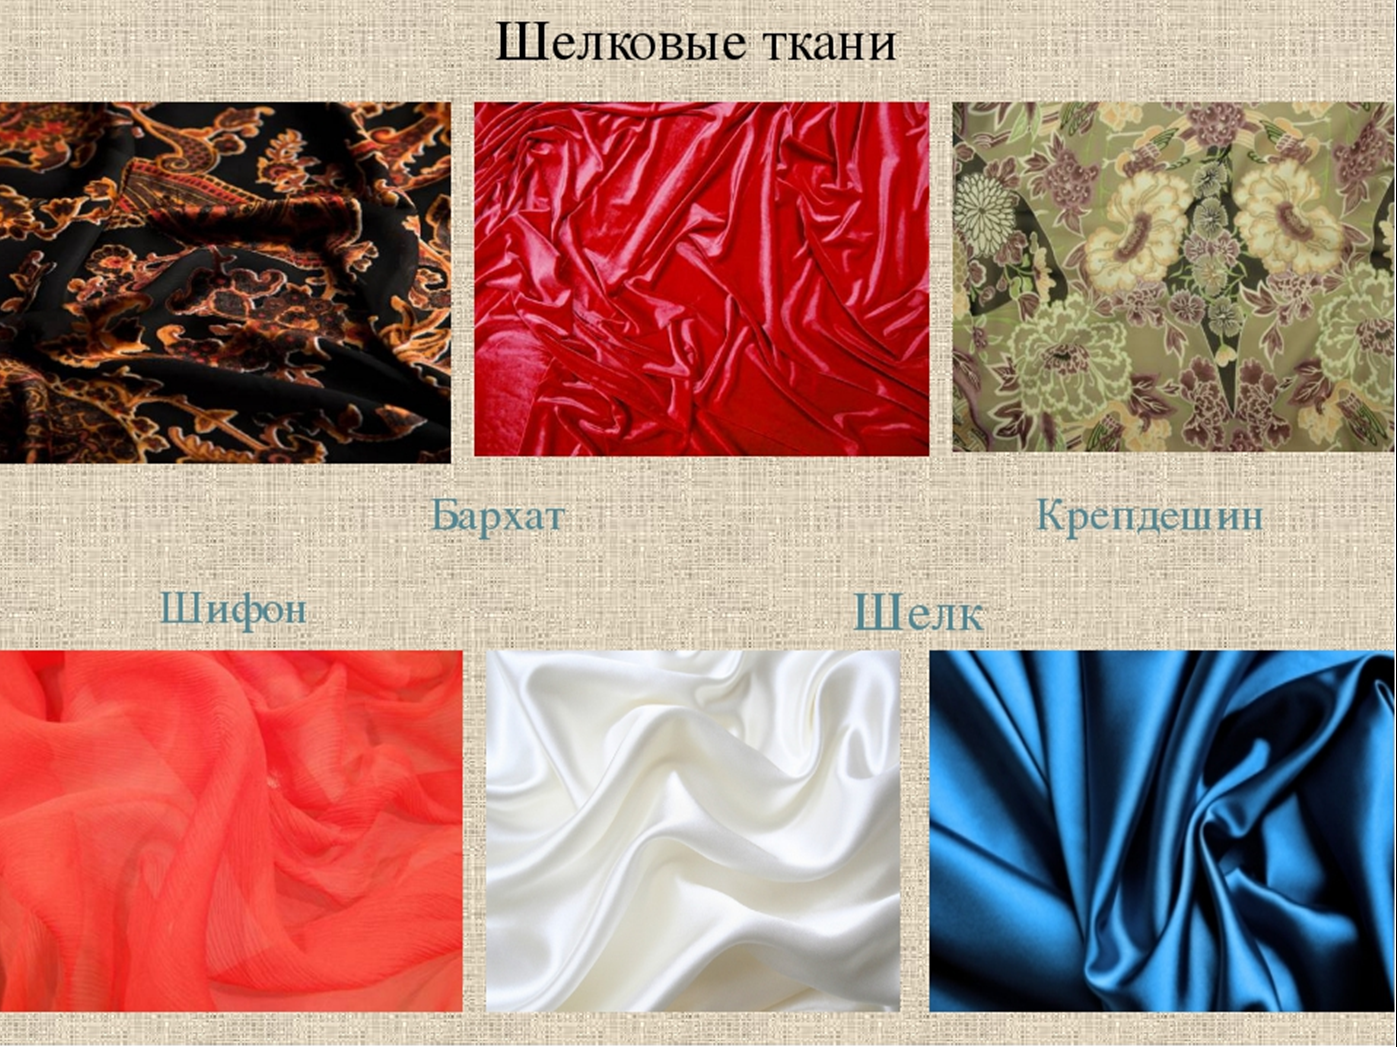 Атлас: описание ткани, состав, свойства, достоинства и недостатки